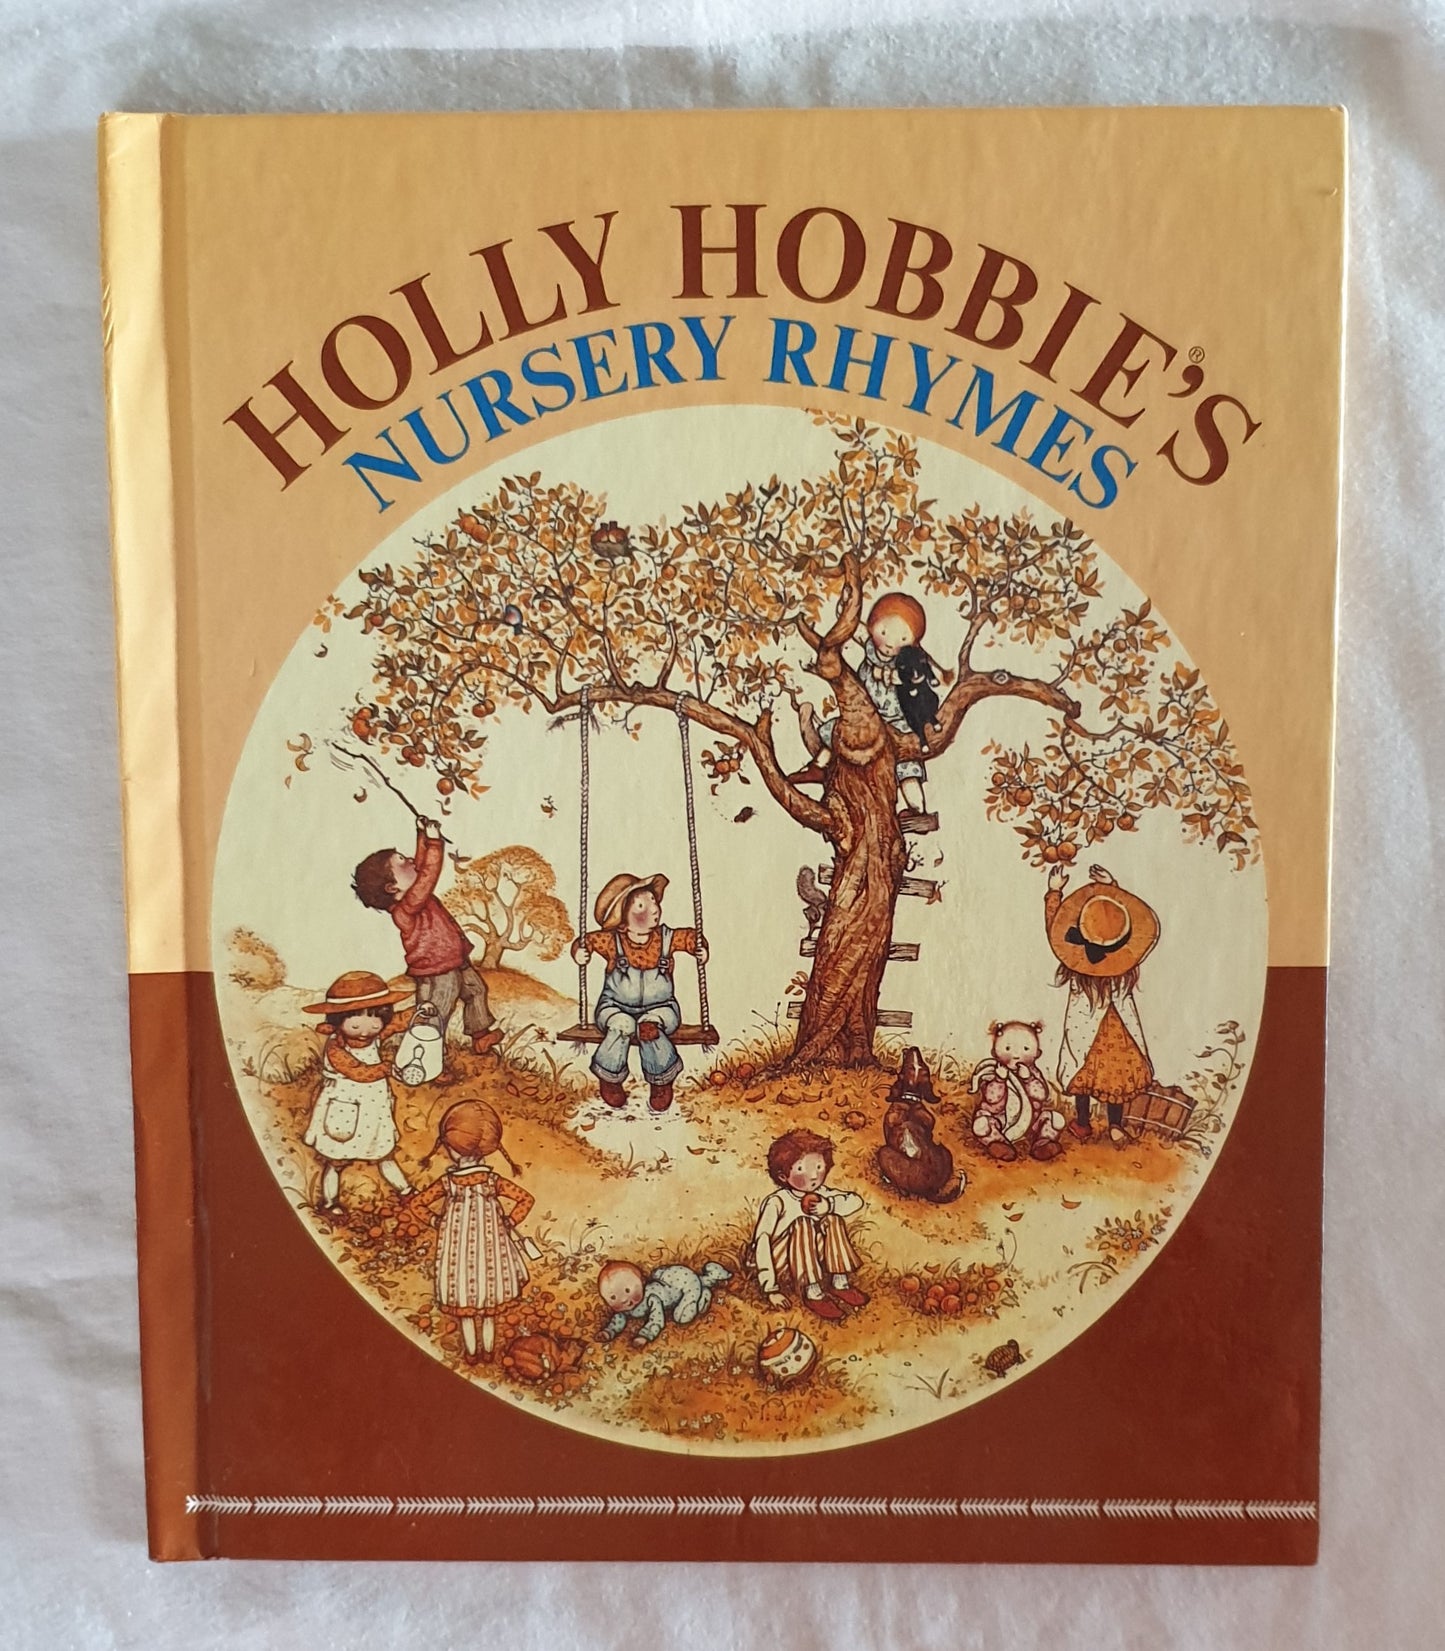 Holly Hobbie's Nursery Rhymes